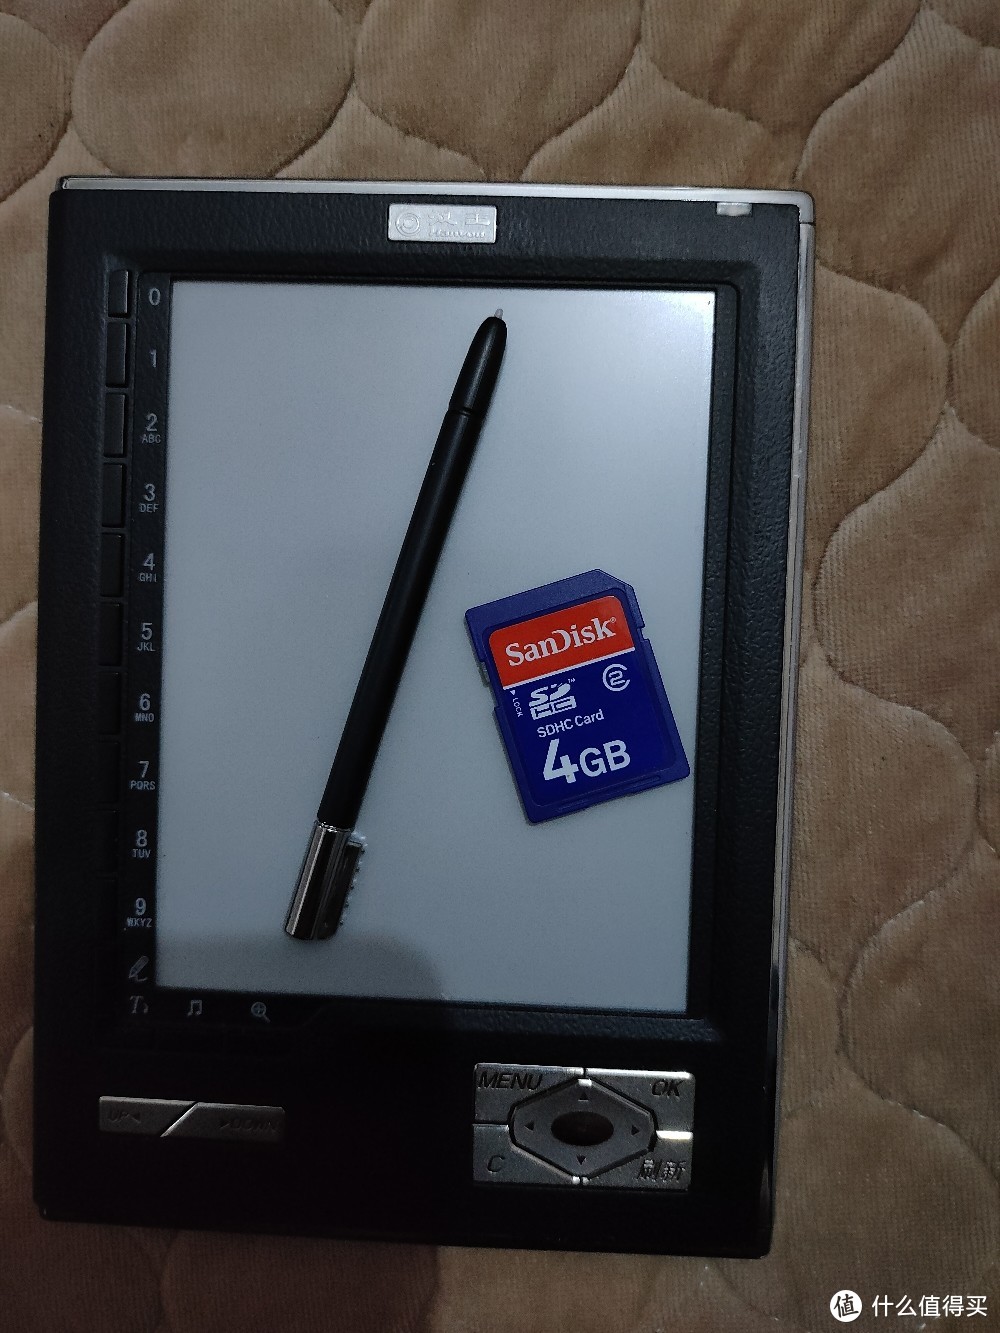 触控笔和内存卡展示。4GB的闪迪卡当年可不便宜，记得2010年在实体店买的2GB卡还要100块钱呢。